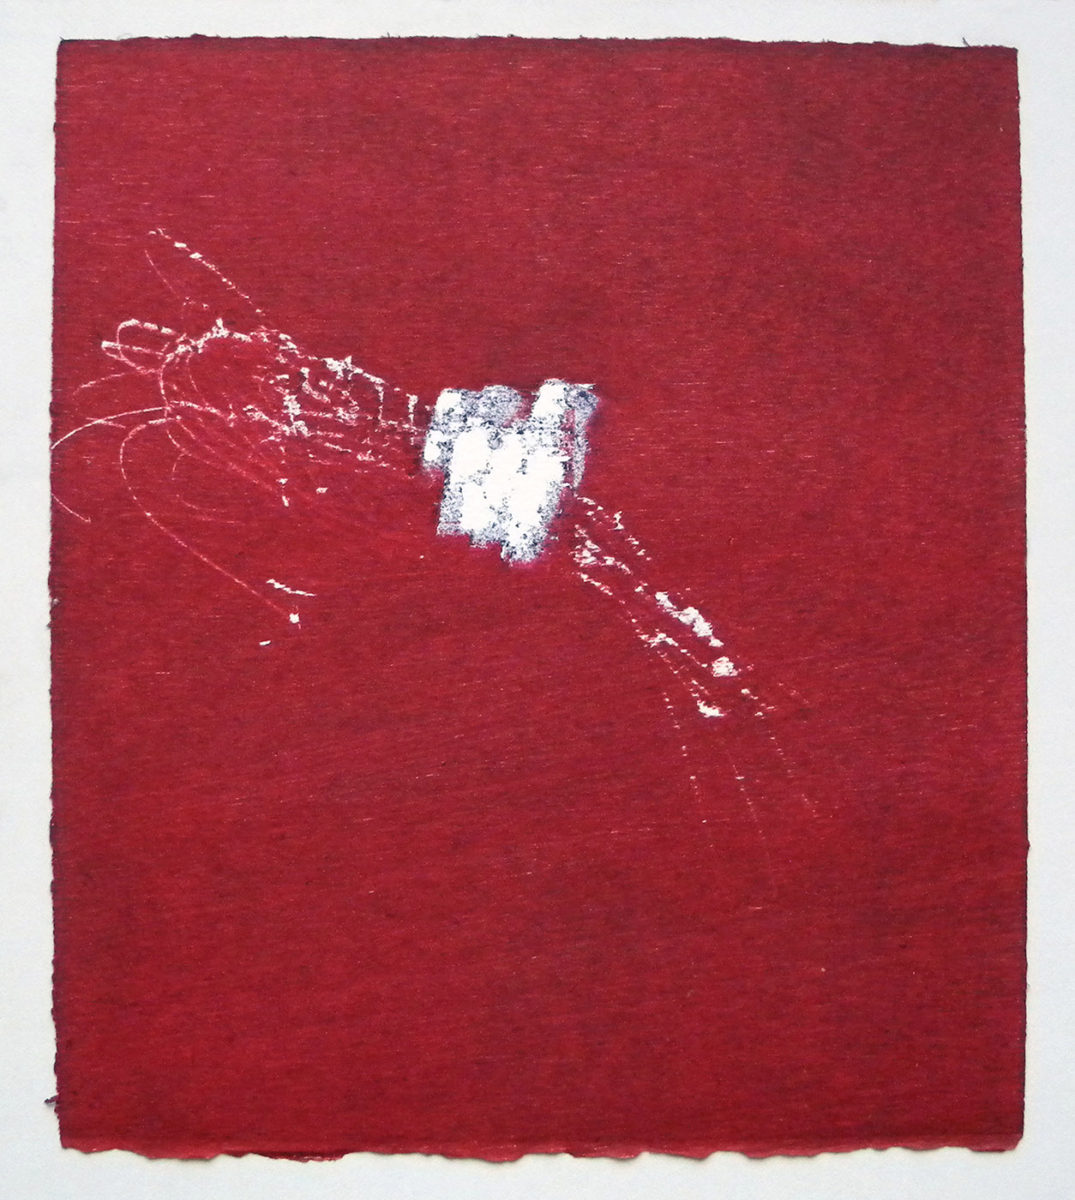 MARC FELD 2012 SONG FOR STEVE LACY 10 Gravure sur bois encre sur papier 25 x 26 cm (Tirage Patrick Vernet)